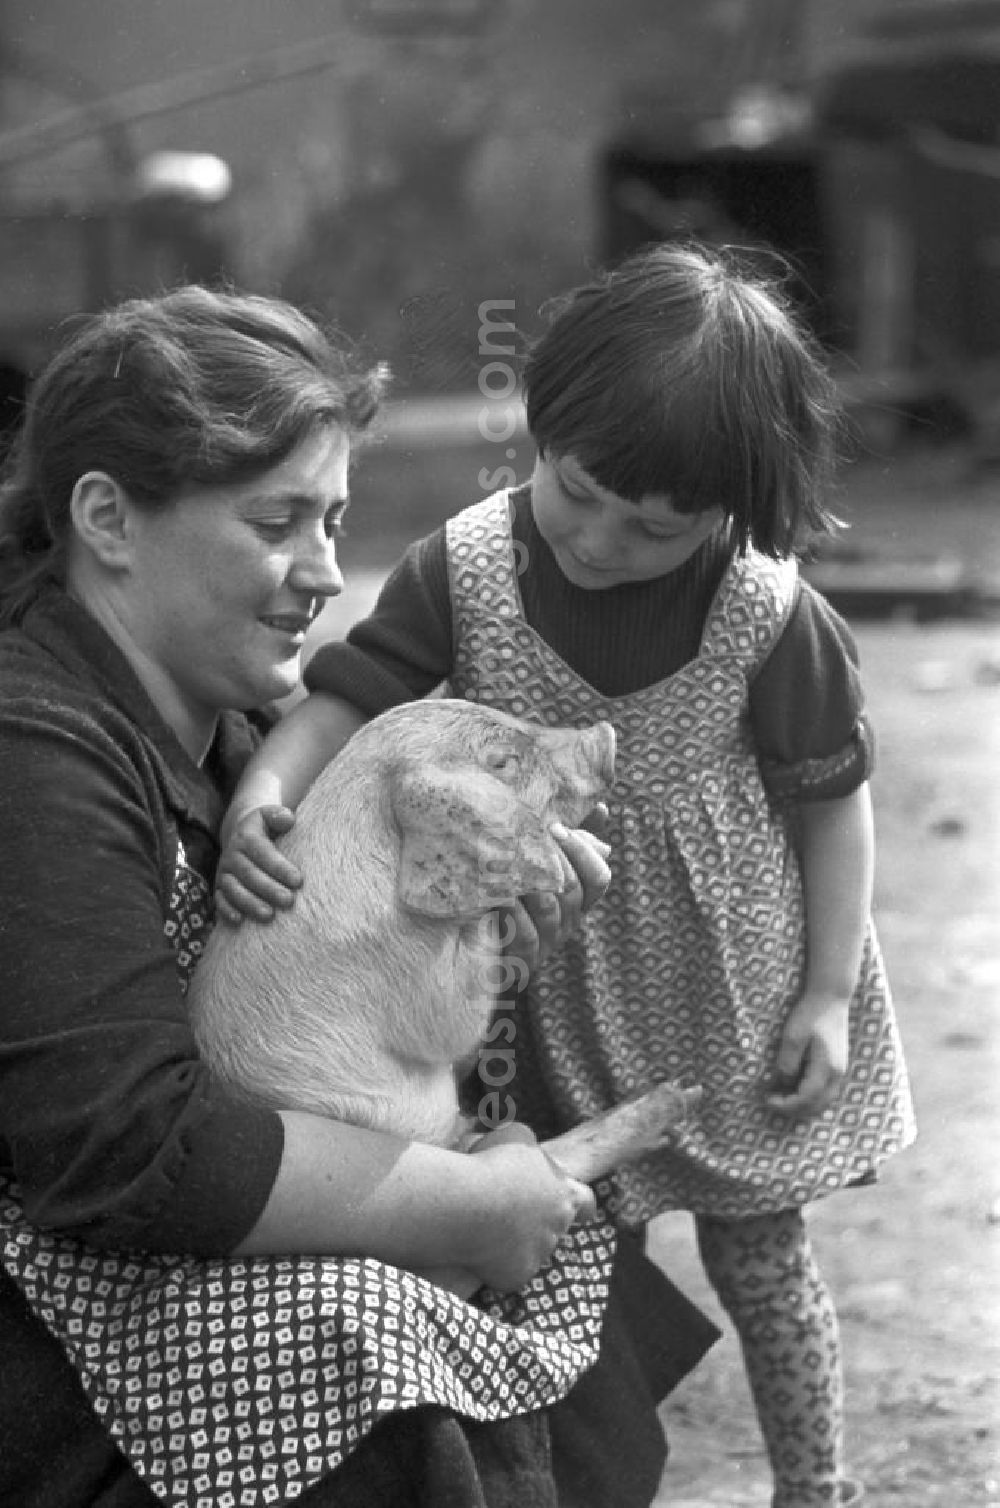 GDR image archive: Pomßen - Ein Mädchen streichelt ein kleines Ferkel in dem Dorf Pomßen nahe Leipzig.